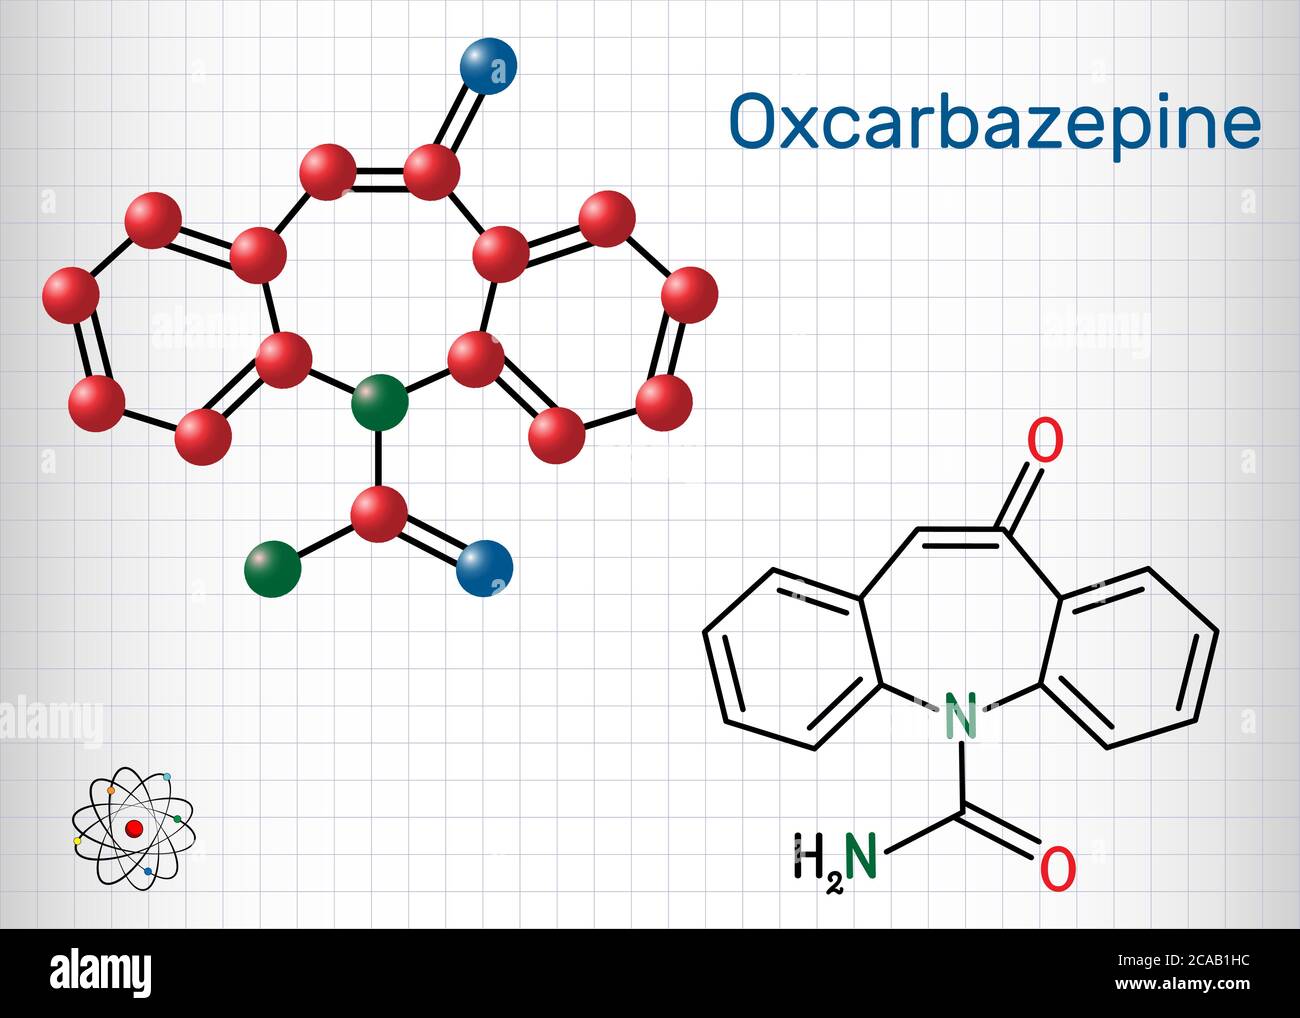 Oxcarbazepine, molécule C15H12N2O2. Il est antiépileptique, anticonvulsant médicament utilisé dans le traitement des crises, l'épilepsie, le trouble bipolaire. Feuille de papier Illustration de Vecteur